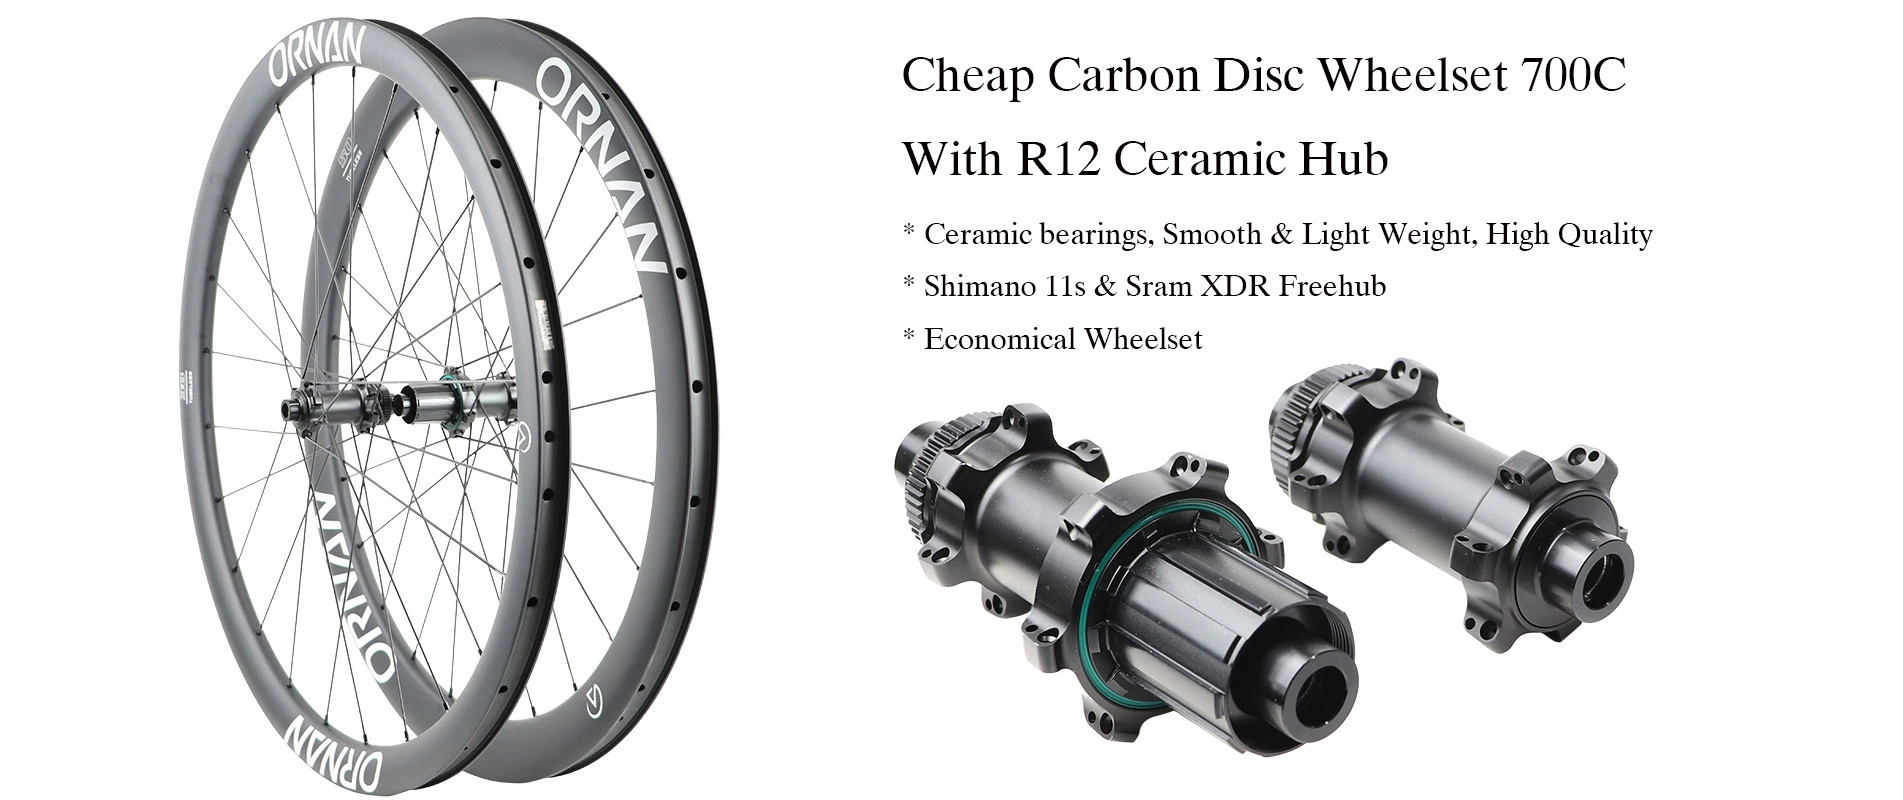 Cheap Carbon Disc Wheelset 700C Manufacturer